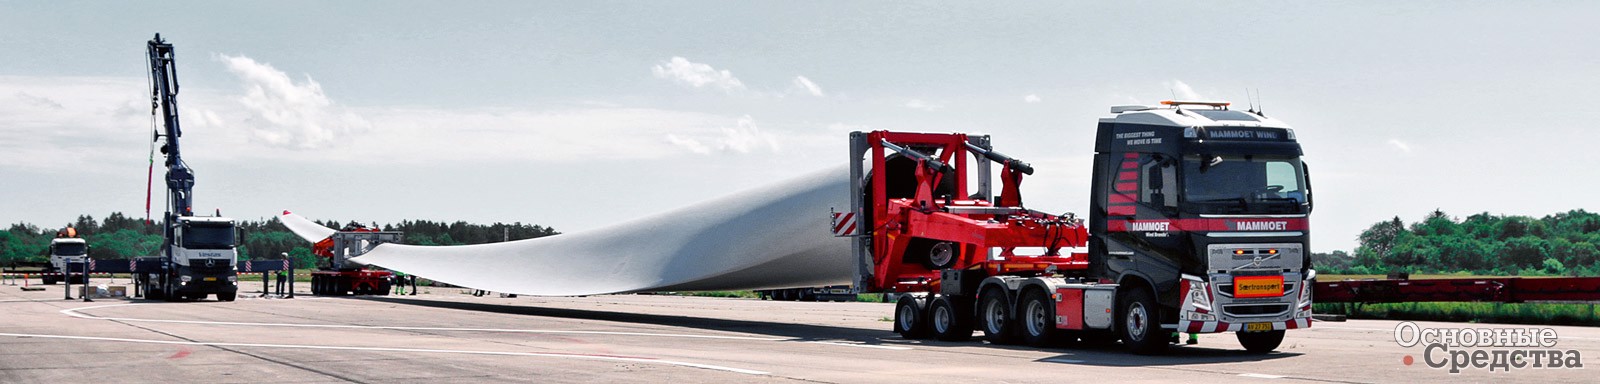 Завод Scheuerle совместно с компанией Vestas разработал систему крепления RBTS – адаптер для перевозки и подъема ветряных лопастей